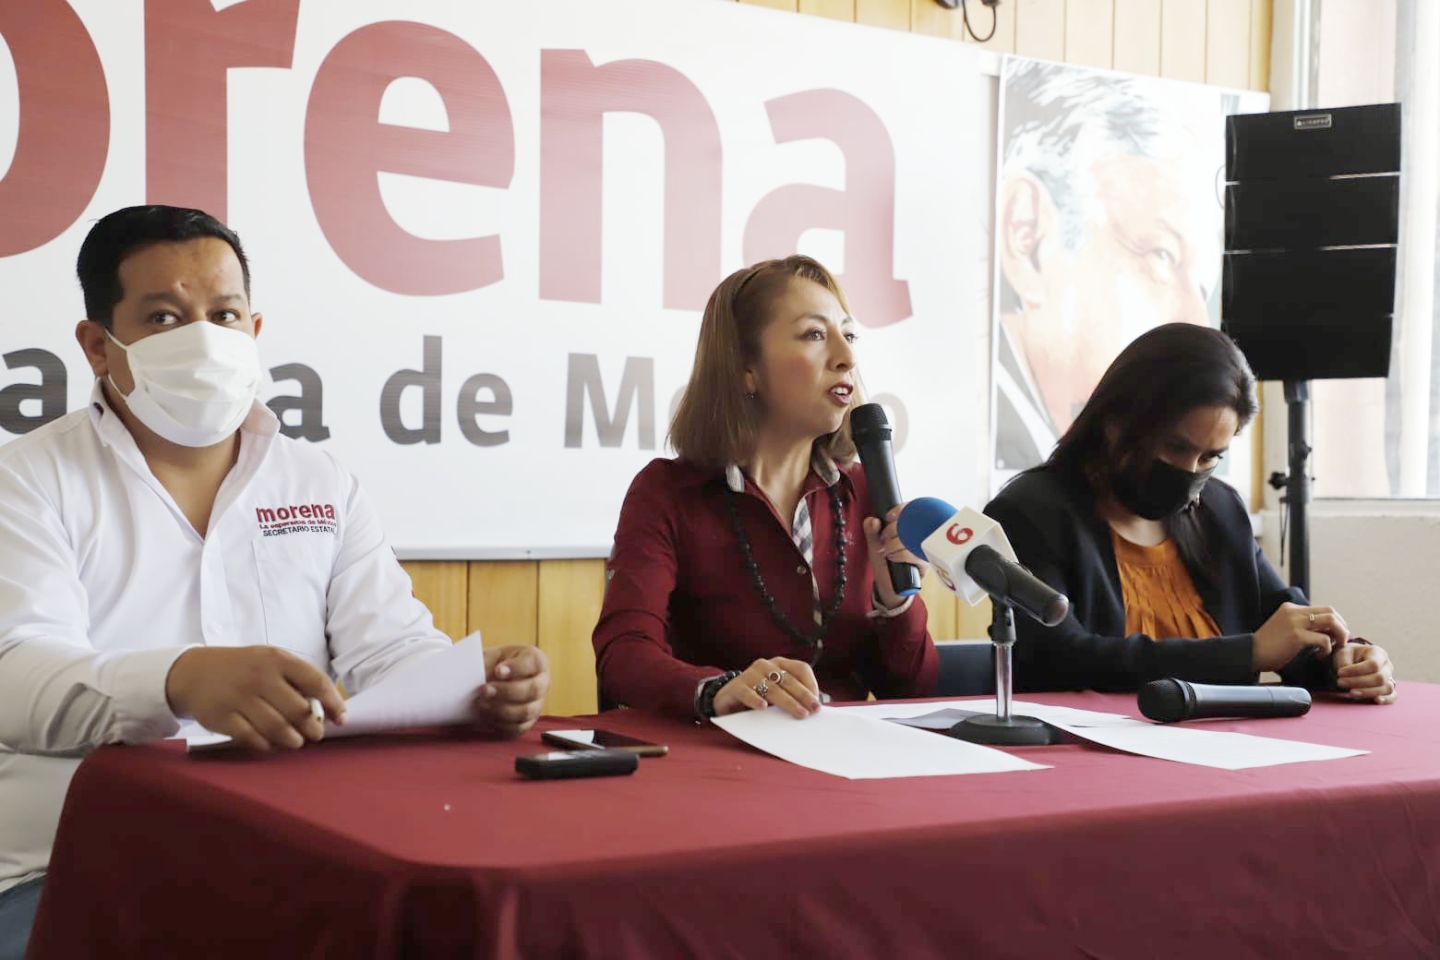 Viggiano recurre a ’guerra sucia’ para afectar a Morena, afirma dirigente estatal